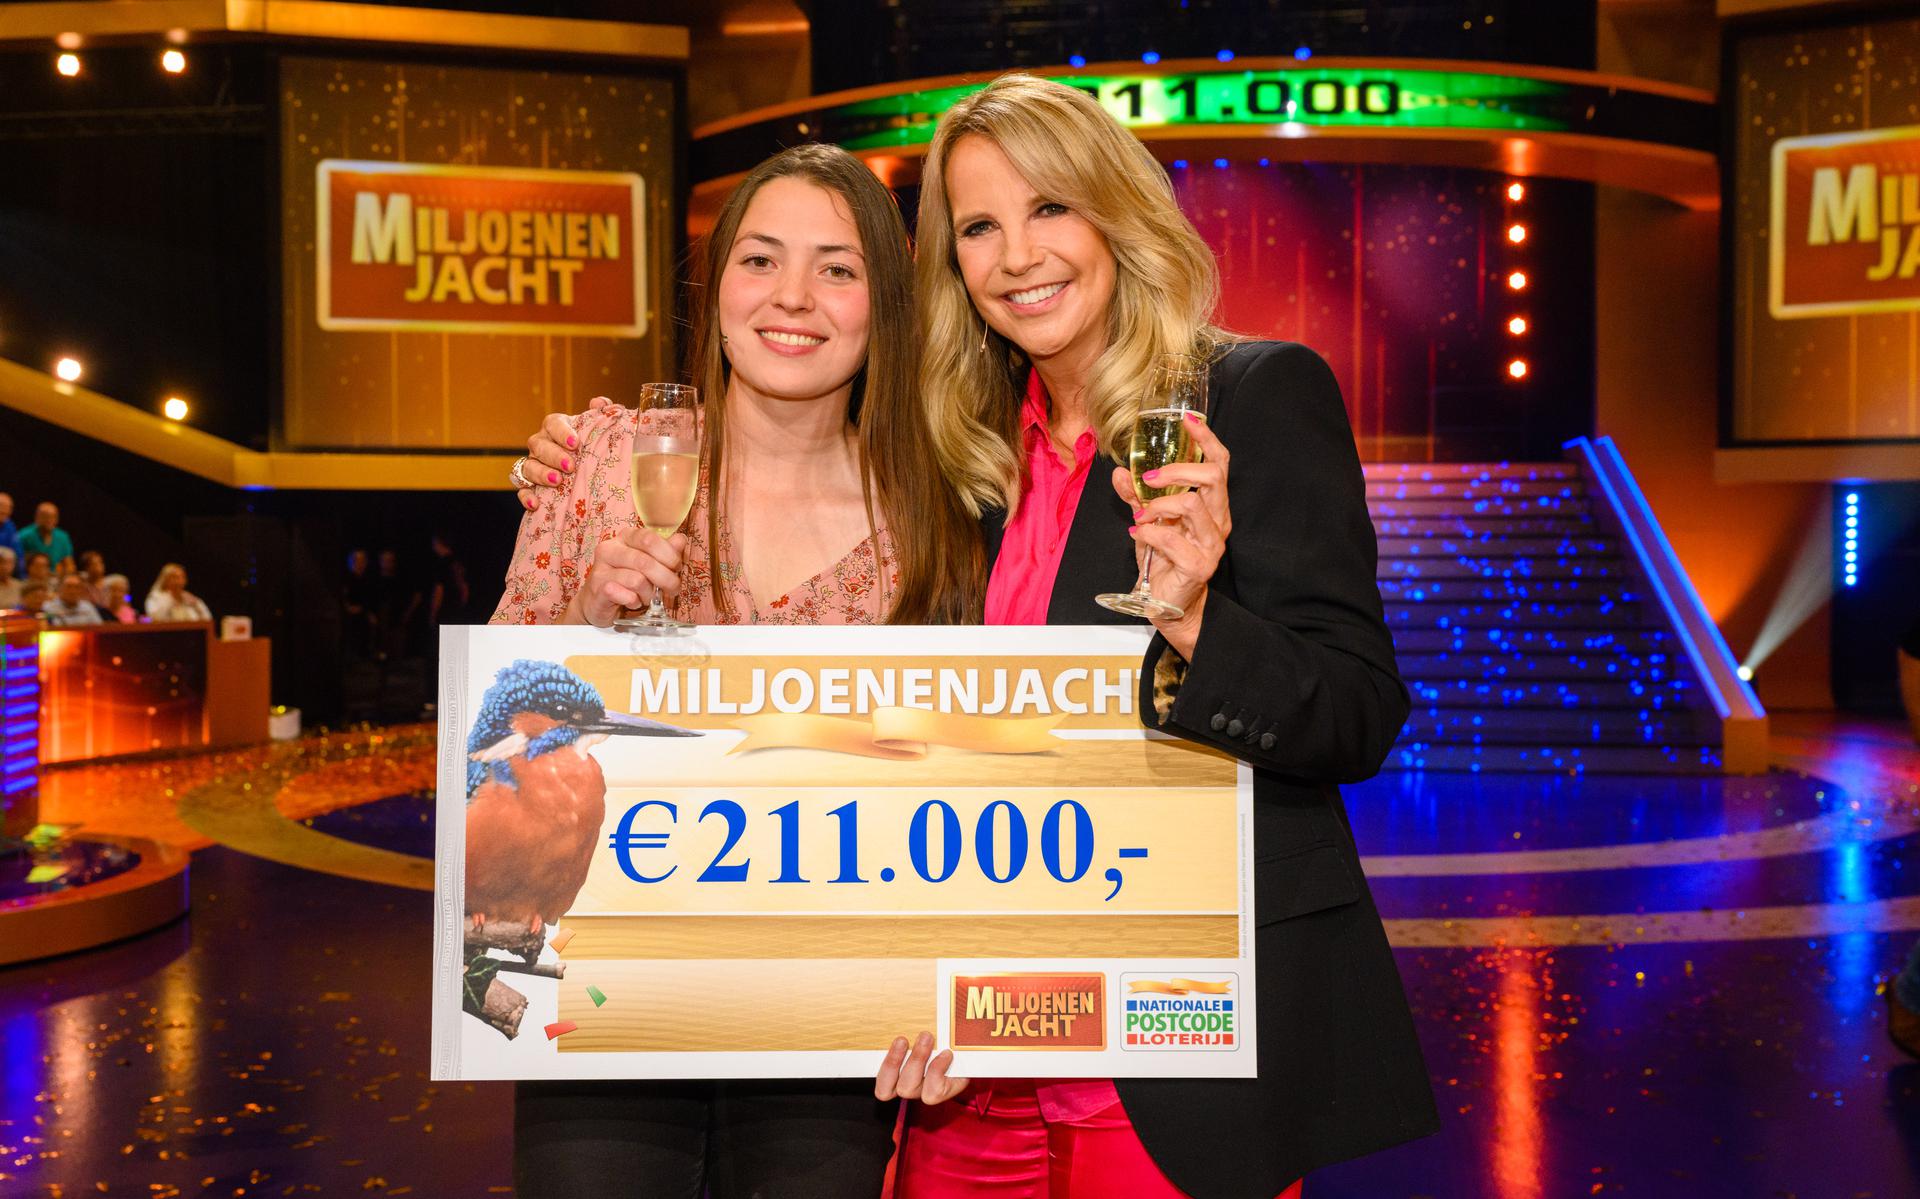 Carmen (25) dari Groningen memenangkan €211.000 di acara TV Miljonenjackt.